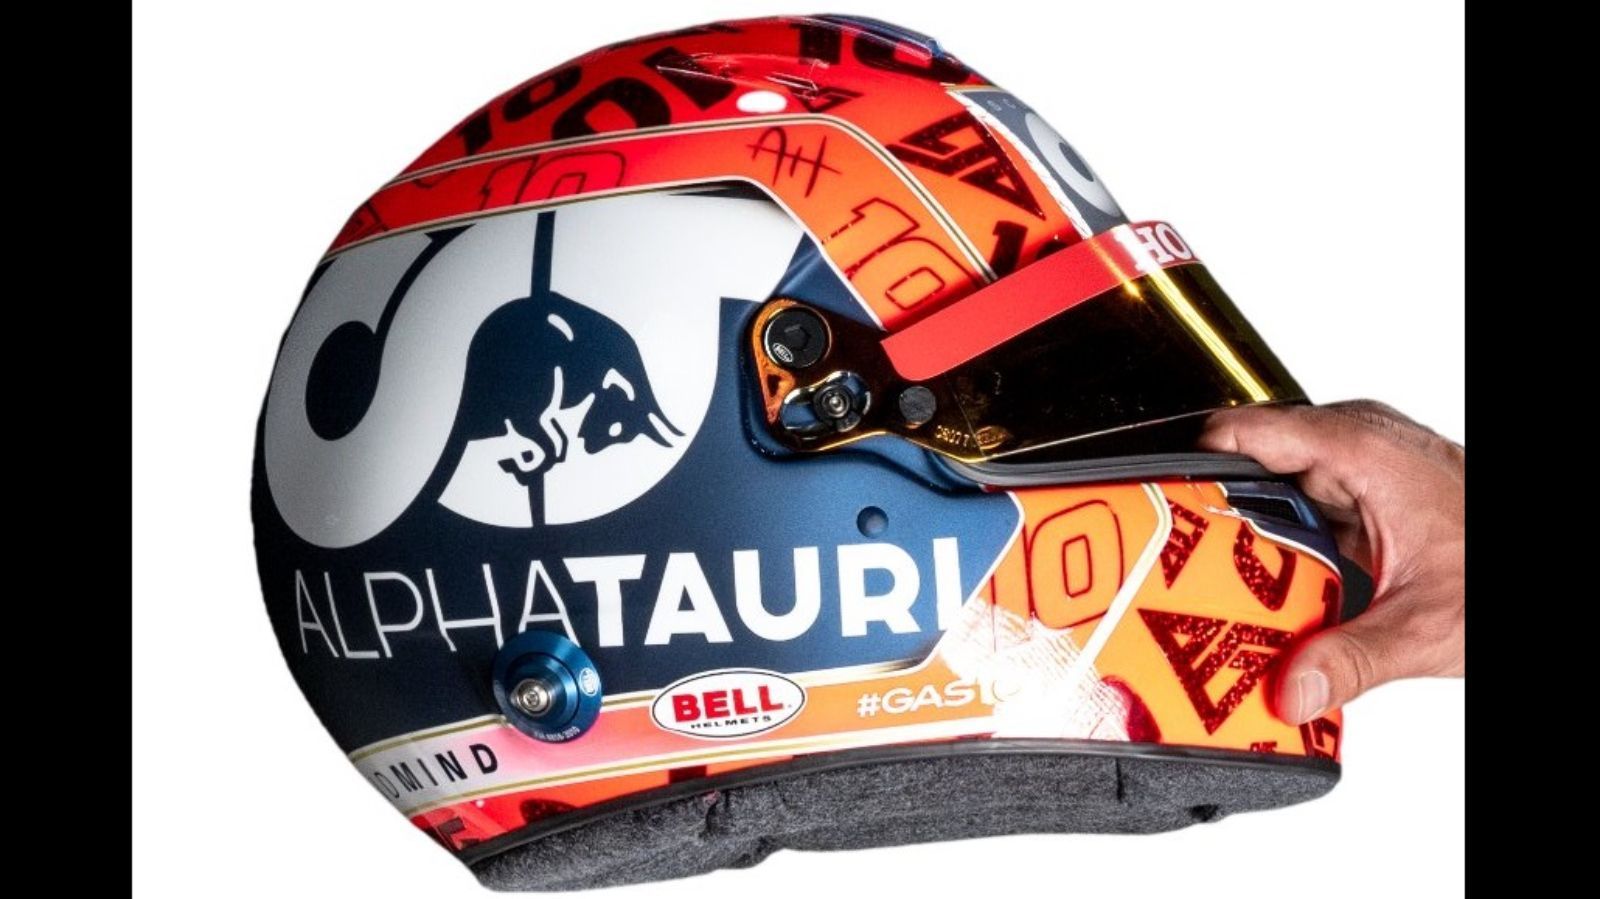 
                <strong>Pierre Gasly (AlphaTauri)</strong><br>
                Während Ricciardo in einem orangefarbenen Auto auf einen blauen Helm vertraut, ist der Helm von Pierre Gasly in einem Weiß-Blauen Auto mehrheitlich Orange. Neben dem Alpha-Tauri-Branding verziert Gaslys Startnummer zehn den Helm.
              